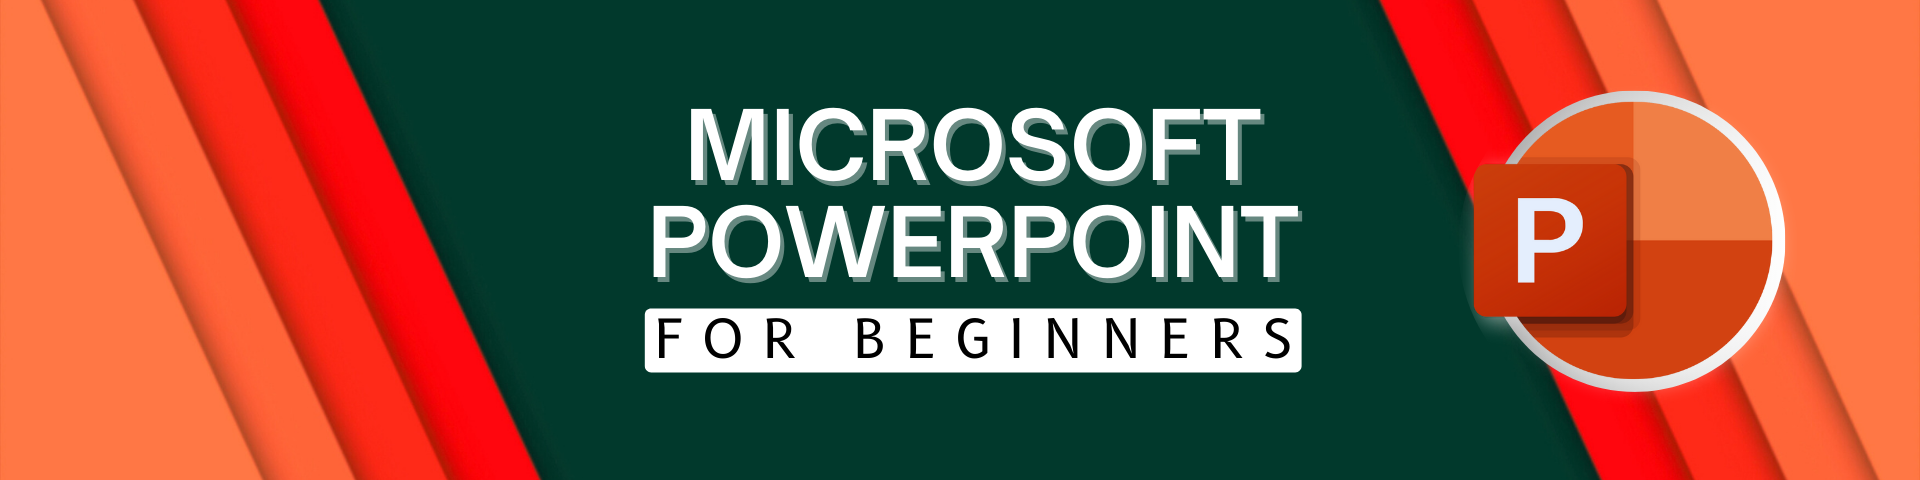 Microsoft PowerPoint for Beginner